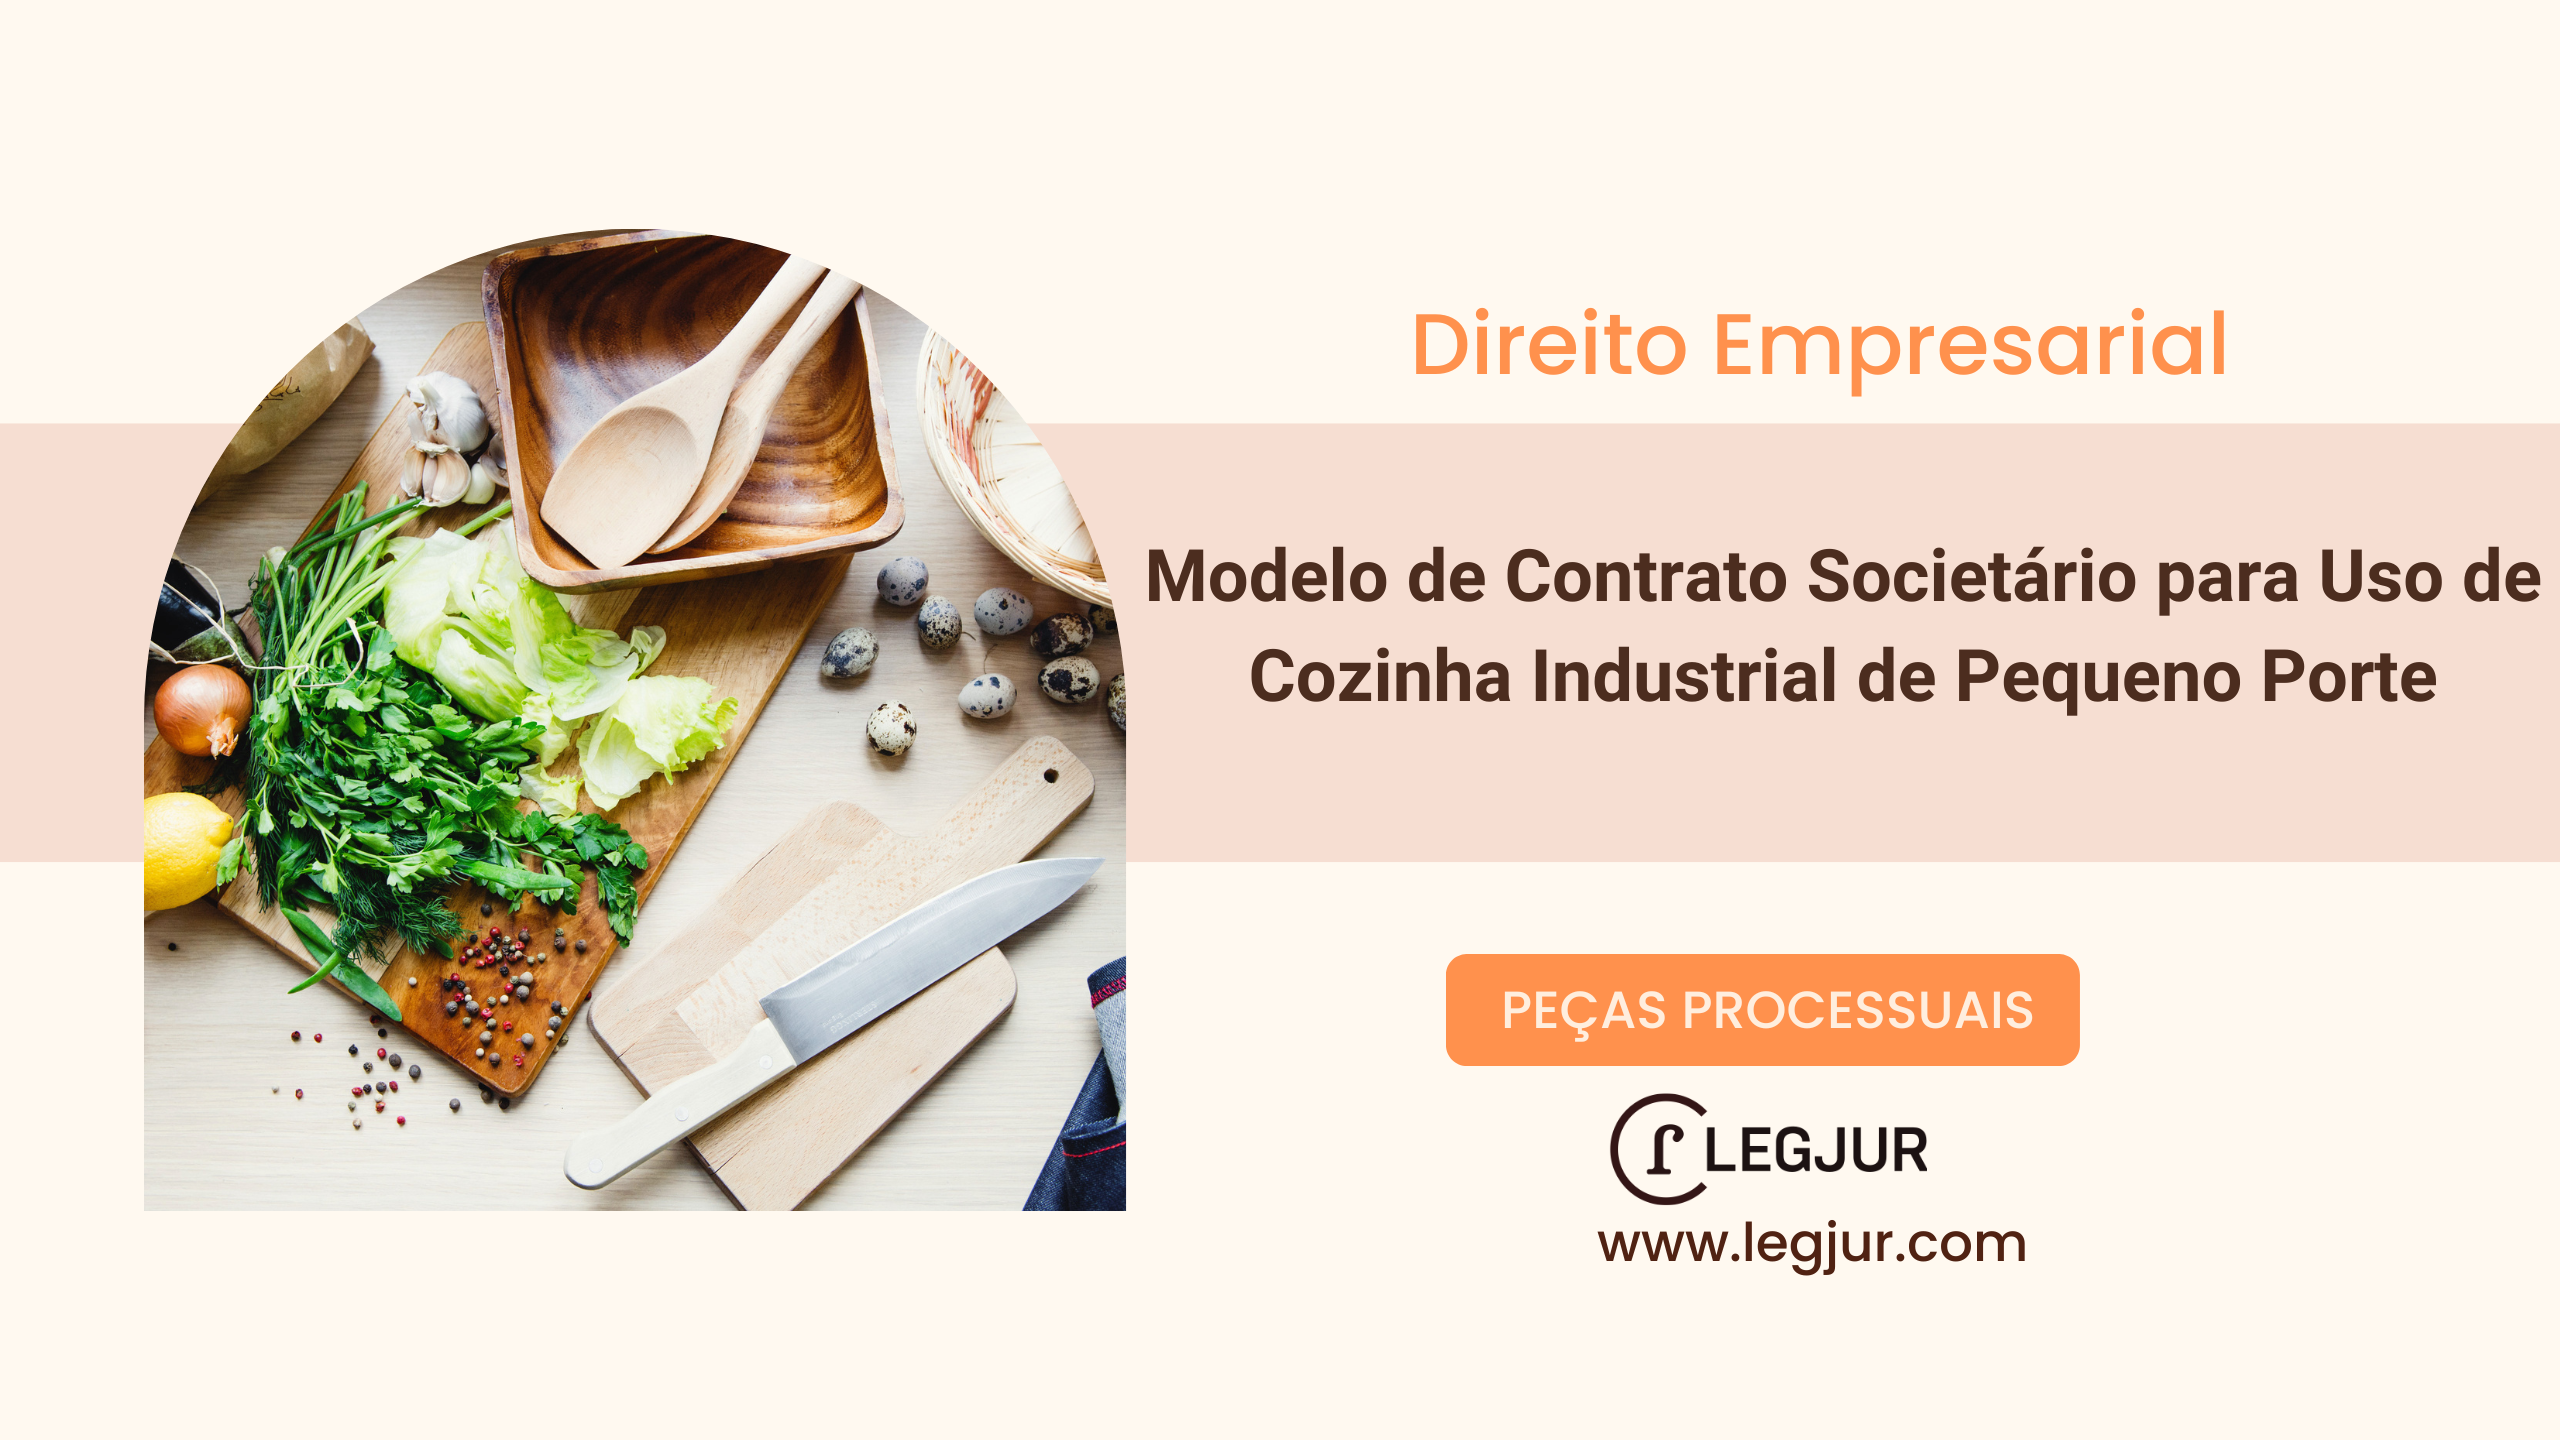 Modelo de Contrato Societário para Uso de Cozinha Industrial de Pequeno Porte